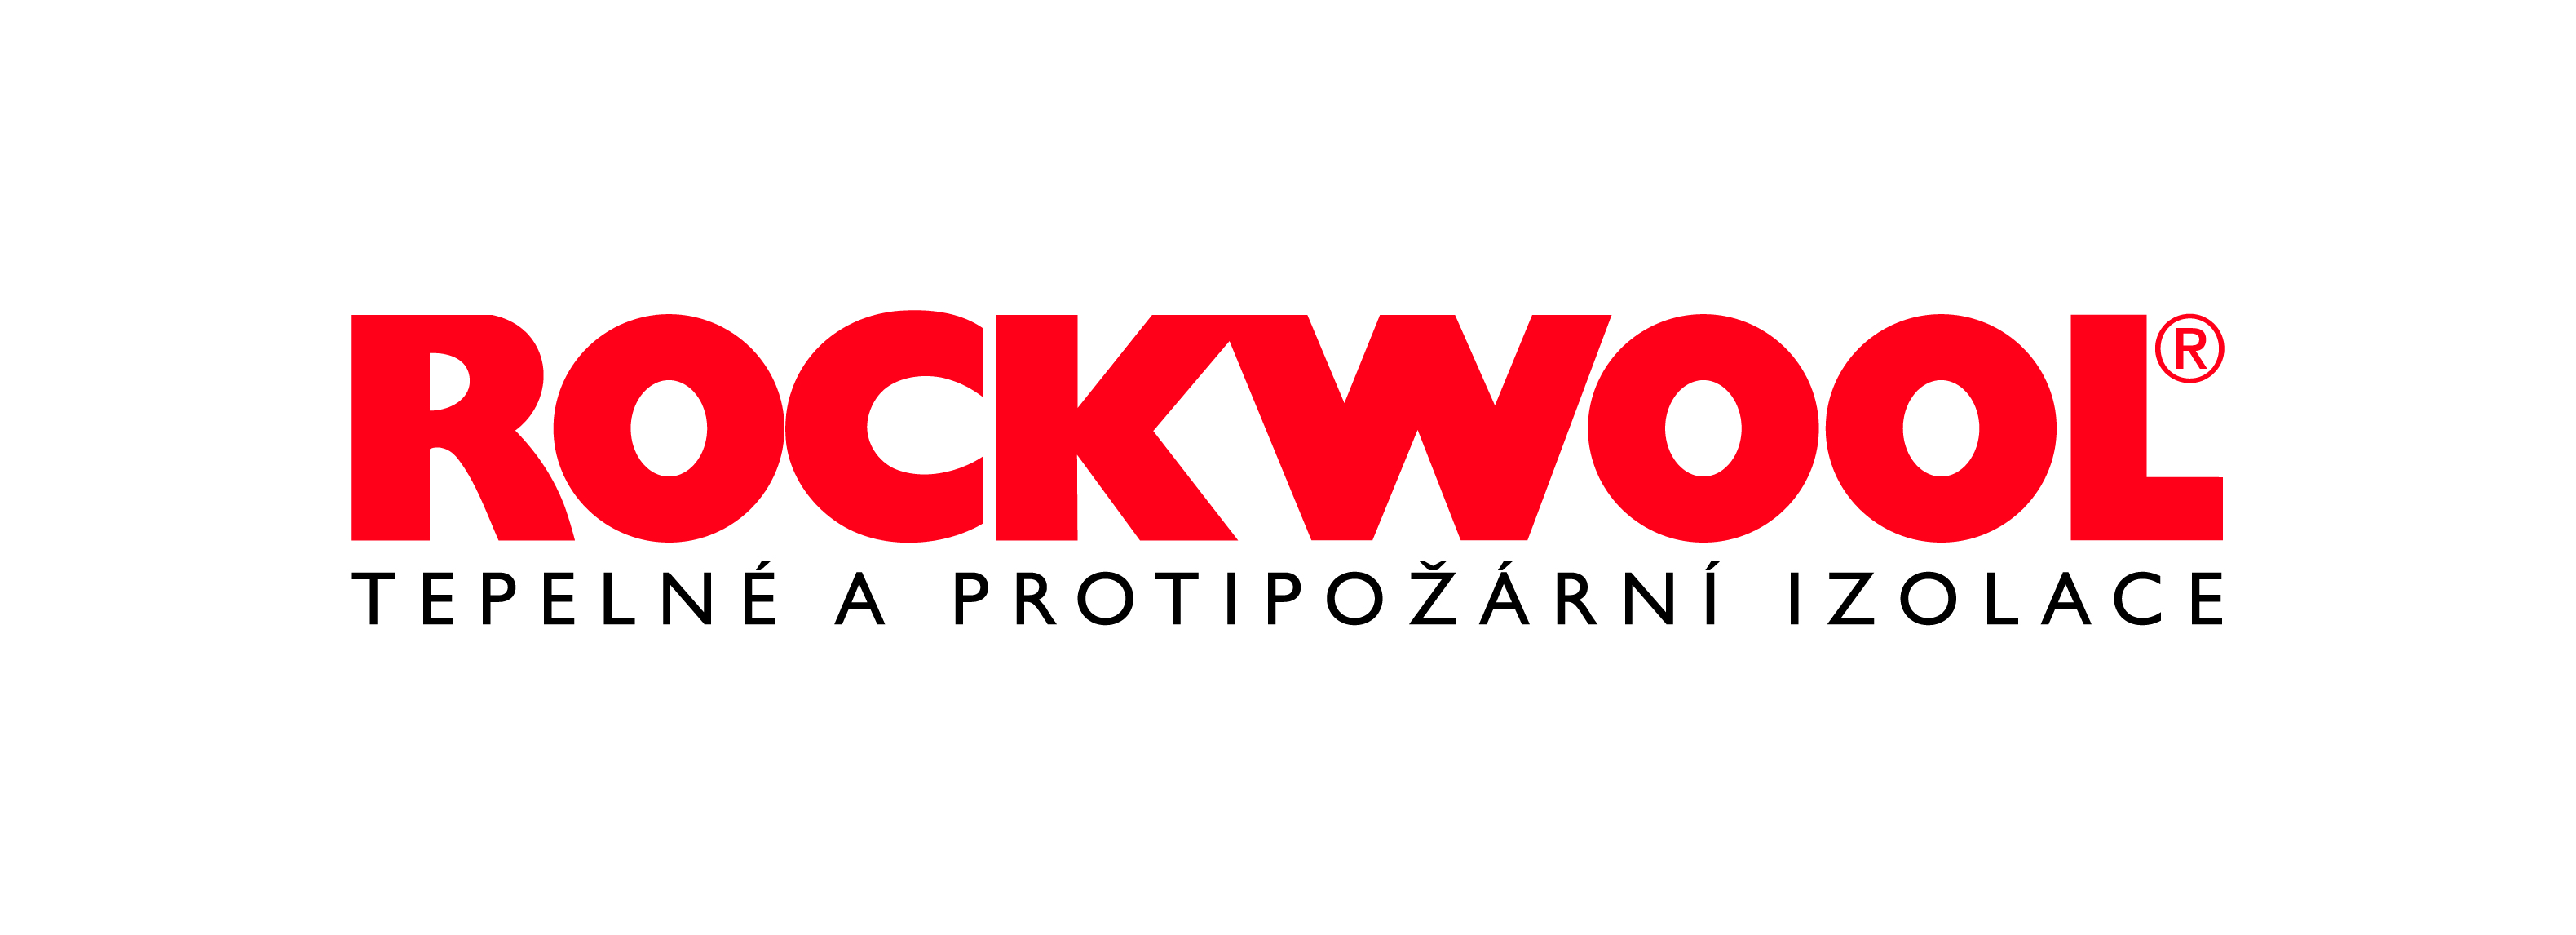 Logo_ROCKWOOL_bily_podklad